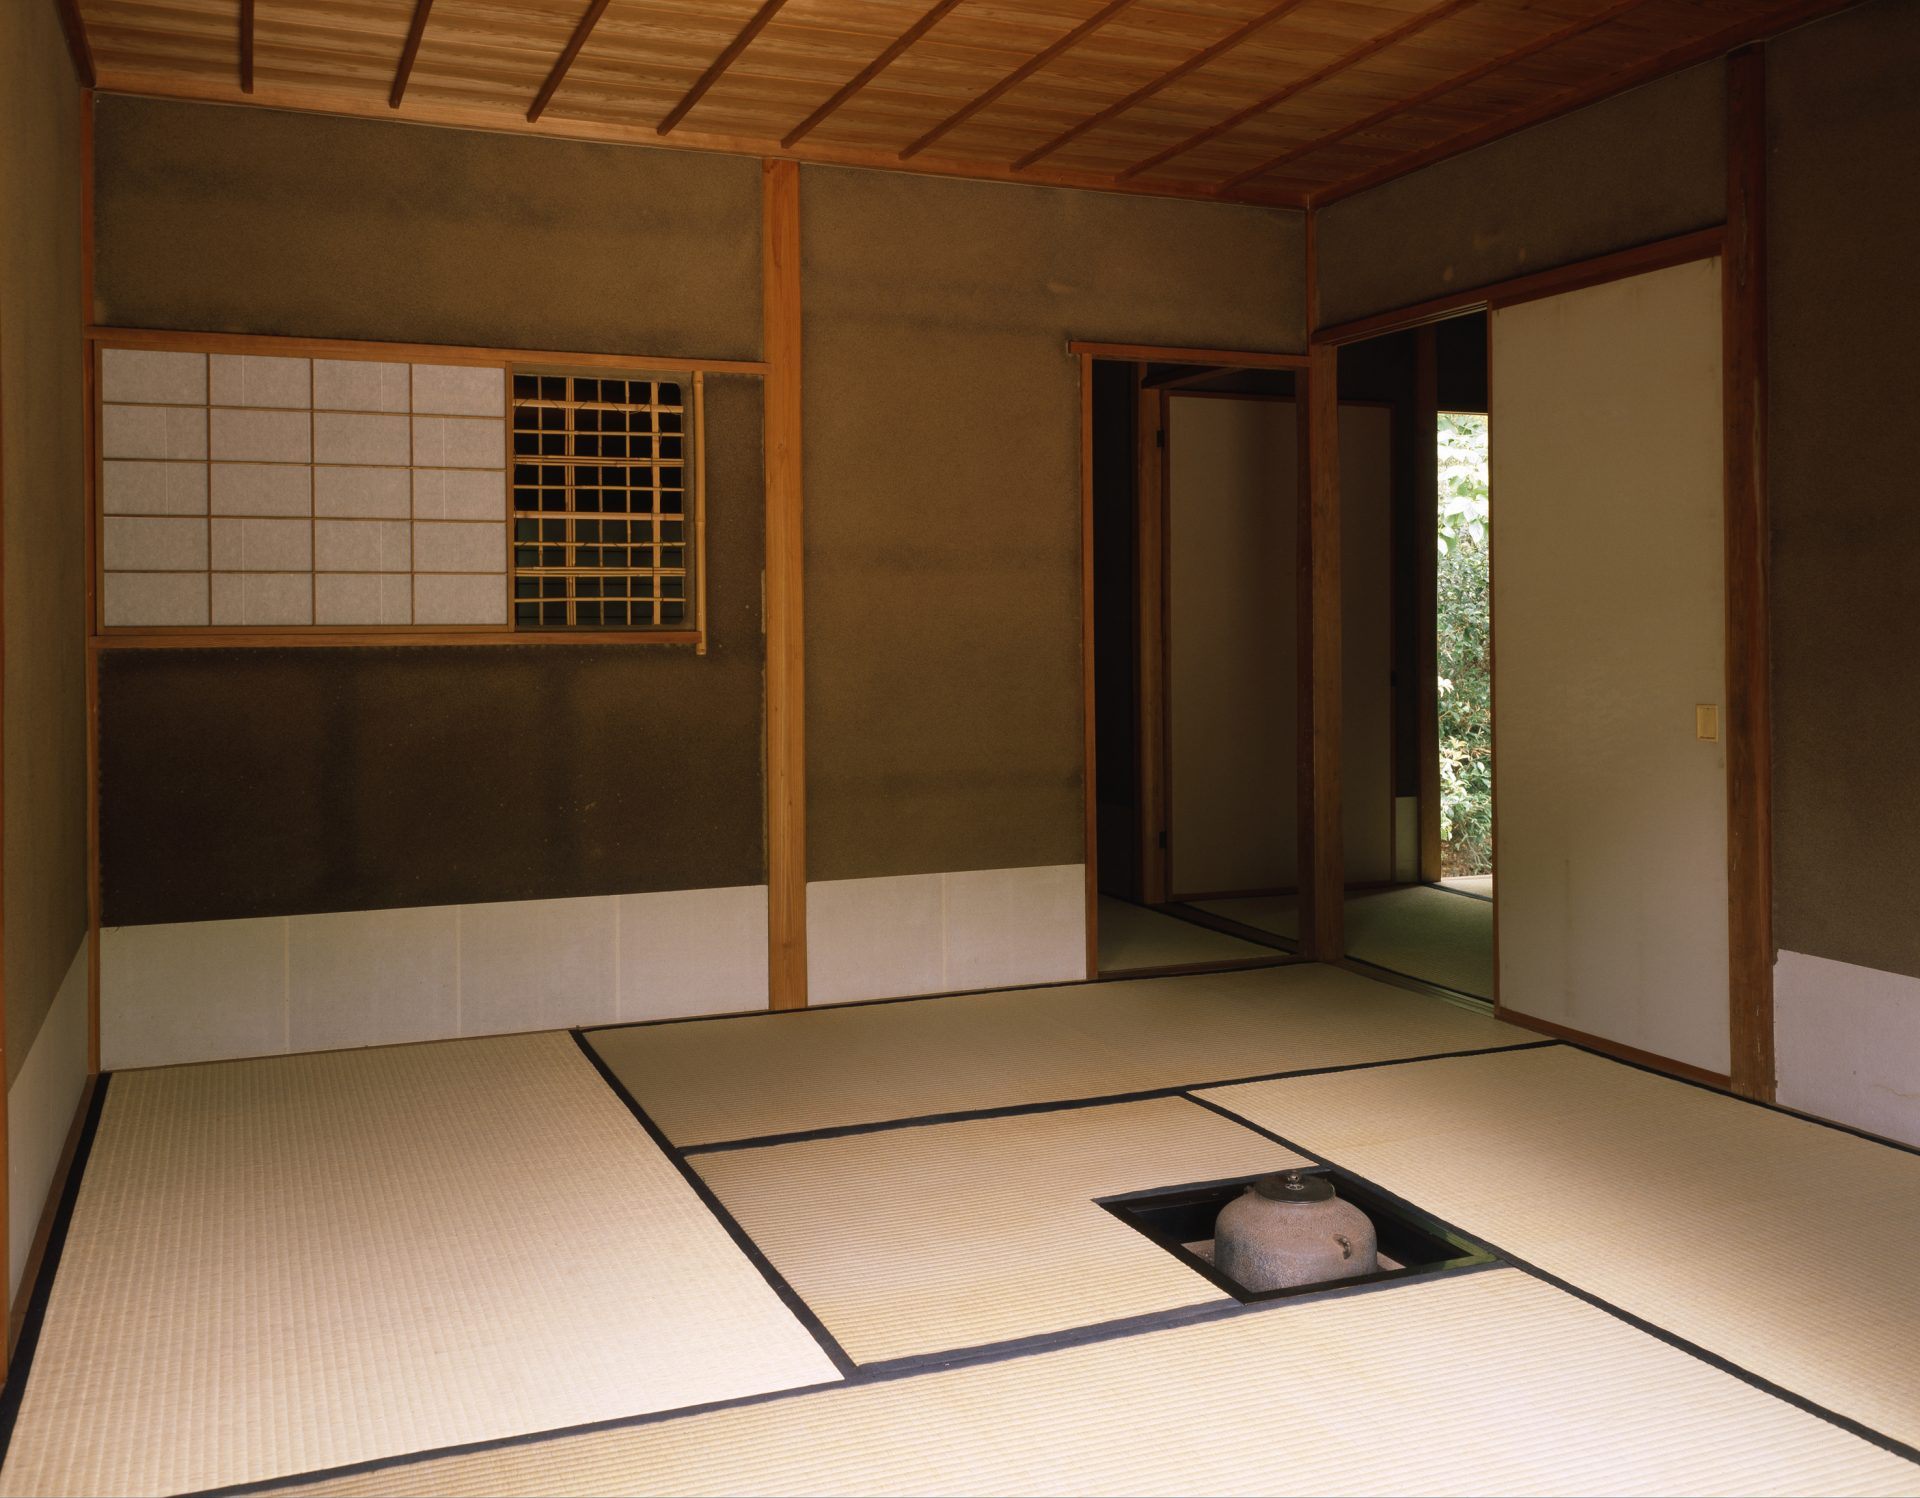 初學者也能一次掌握 介紹日本的茶道文化以及能體驗茶道魅力的文化設施 好運日本行